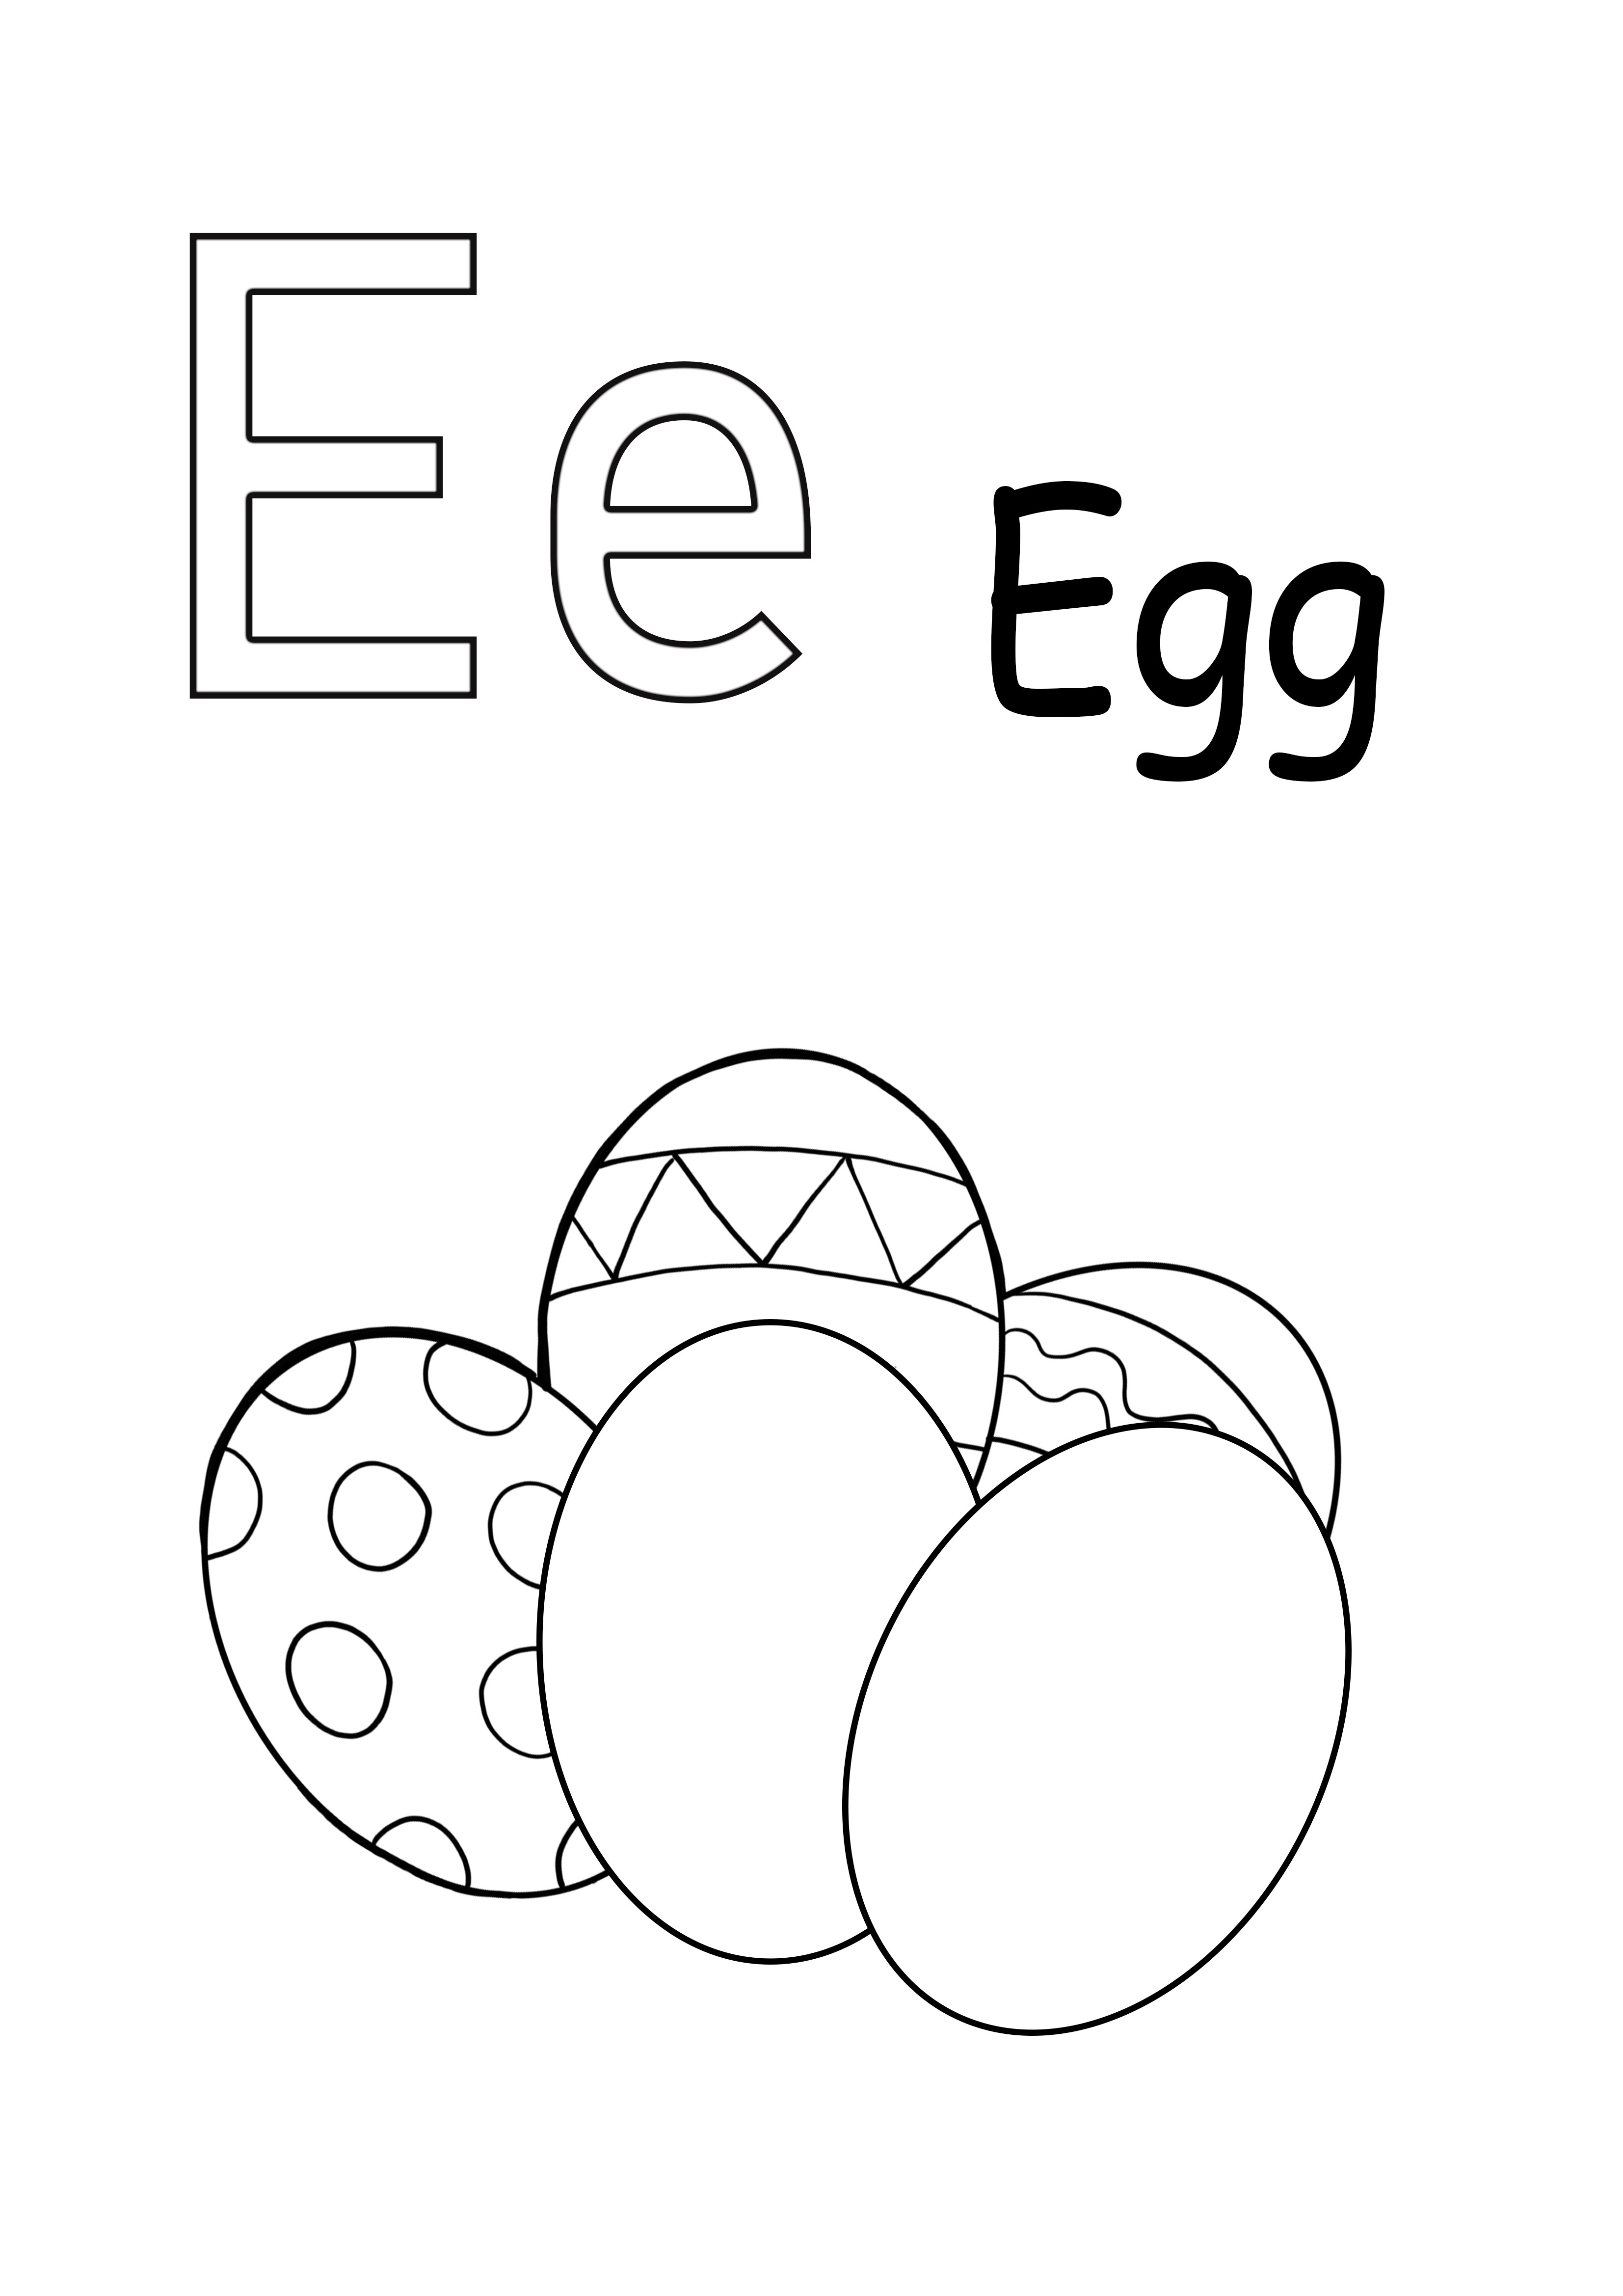 Kirjain E on munatulostettavalle arkille yksinkertaista värjäystä varten